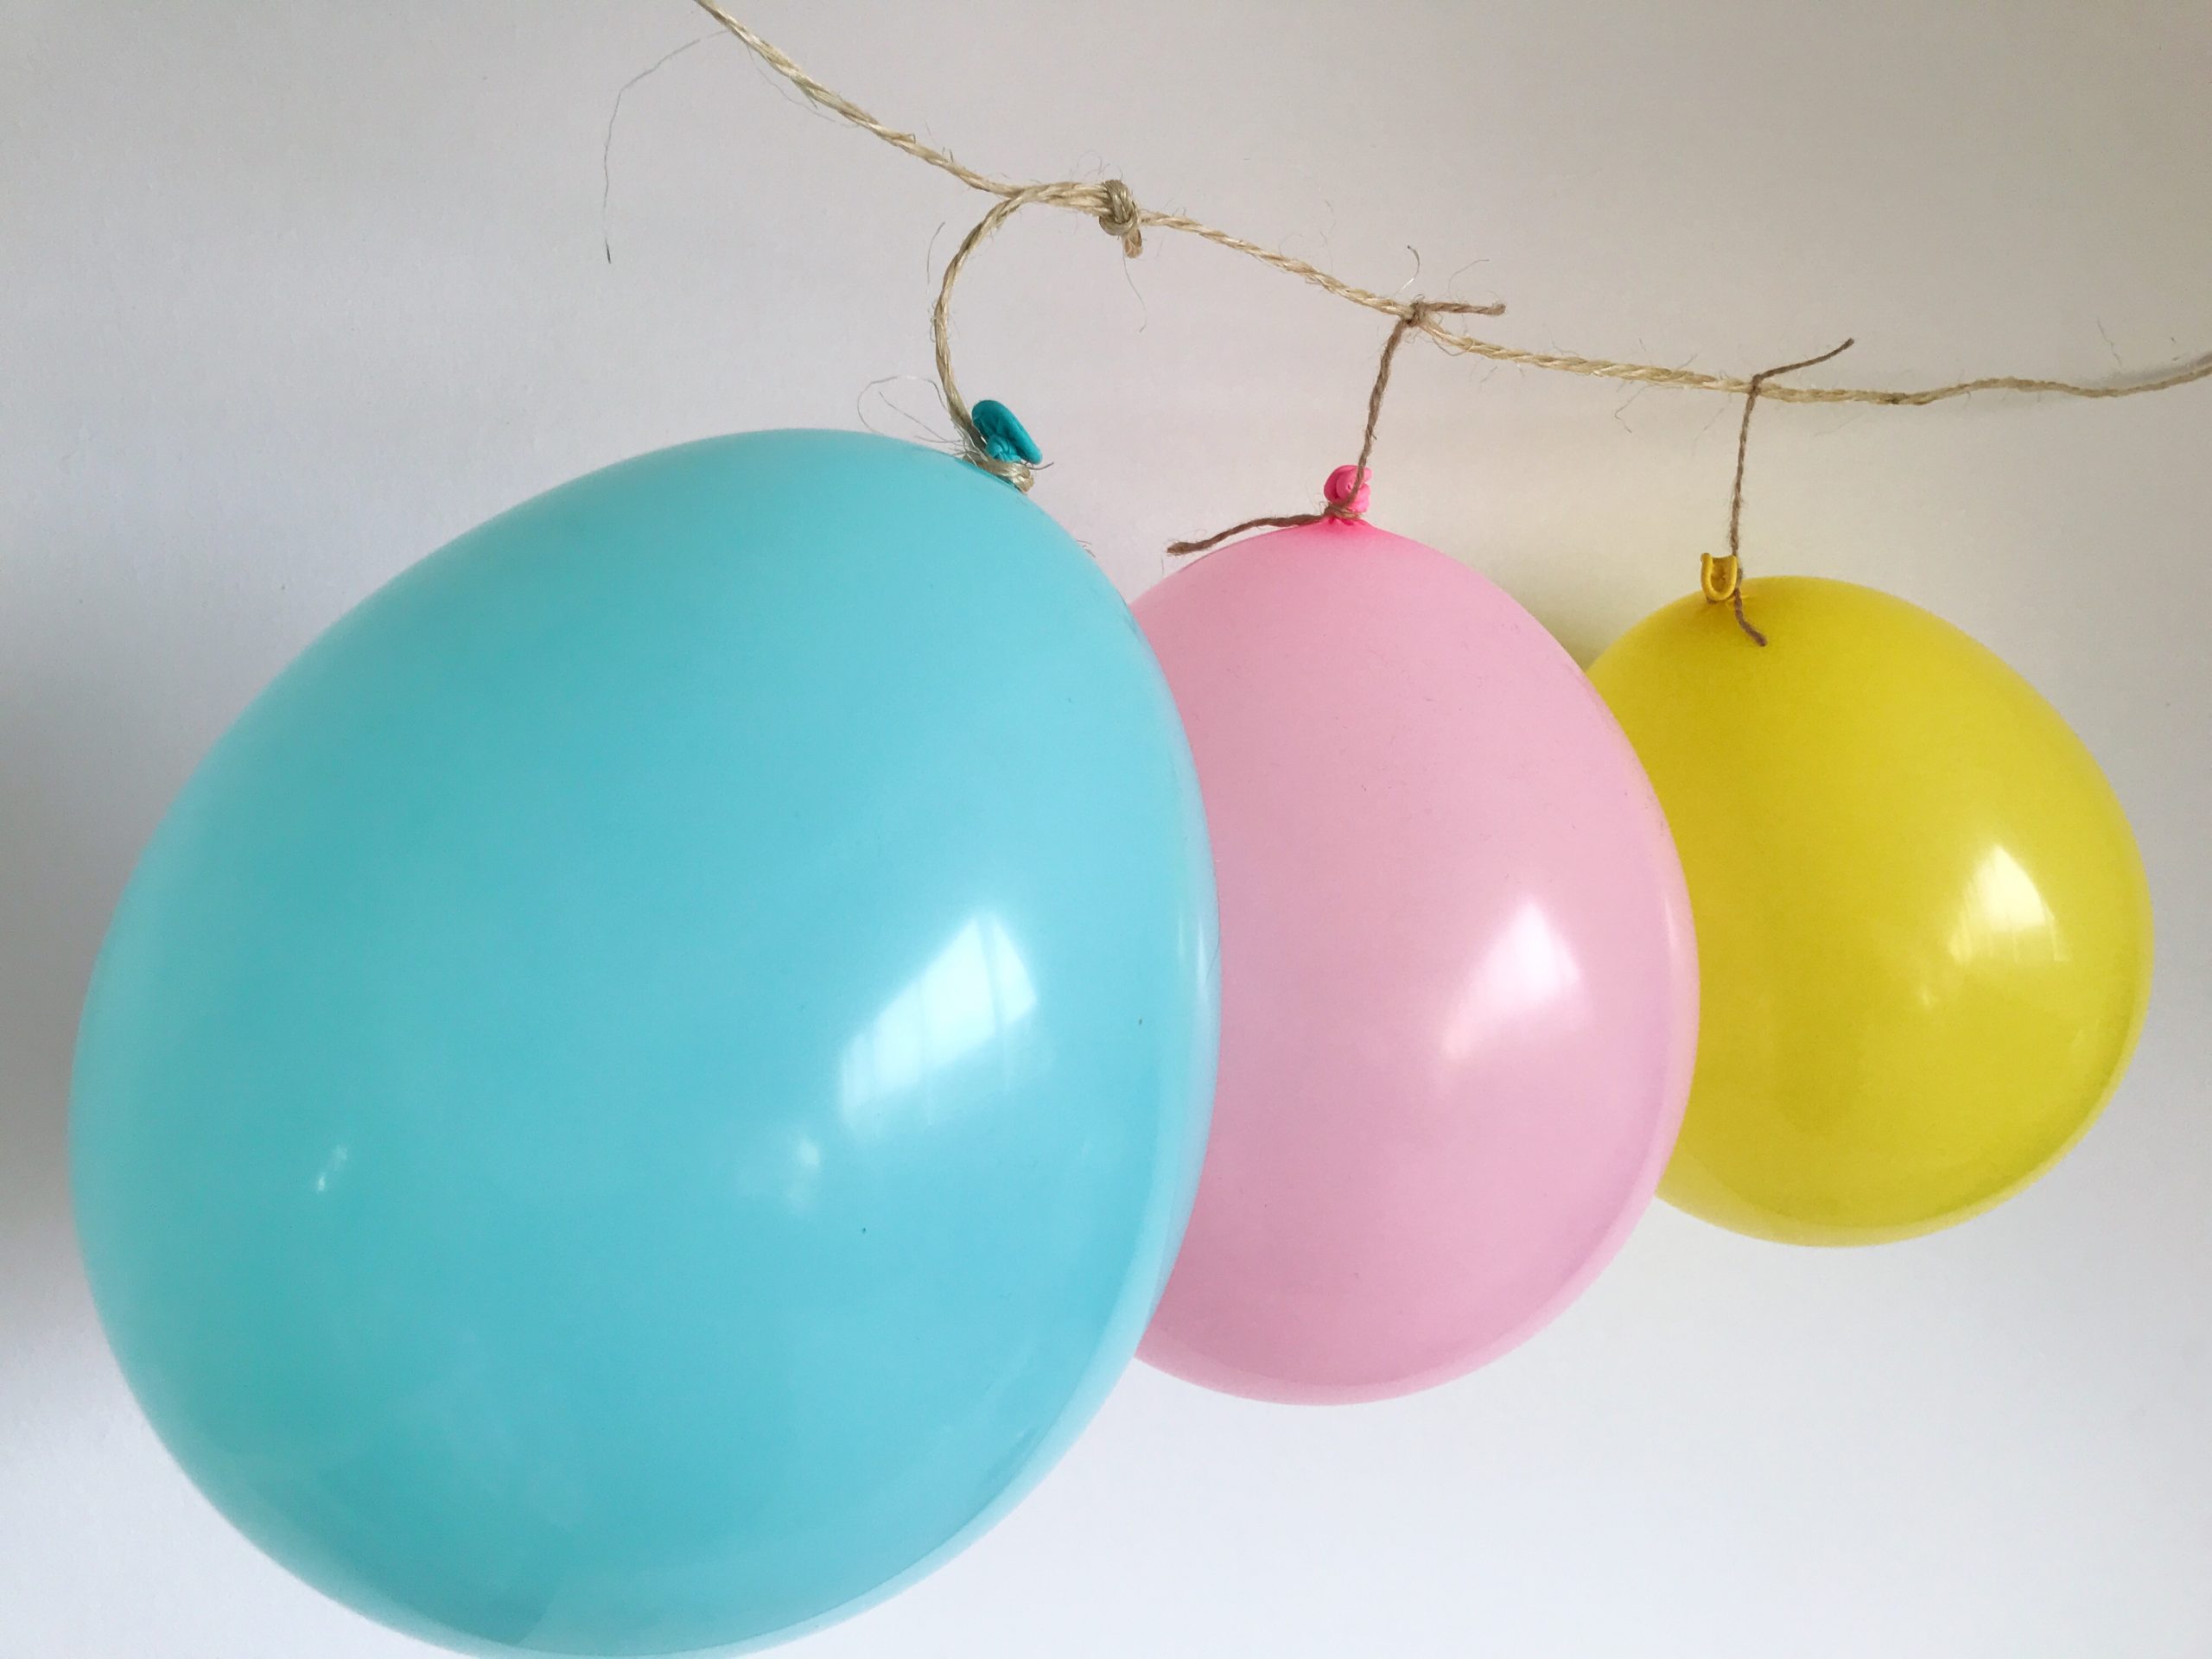 Ballon zonder helium: zo laat je ballonnen hangen zonder heliumfles te gebruiken (DIY)